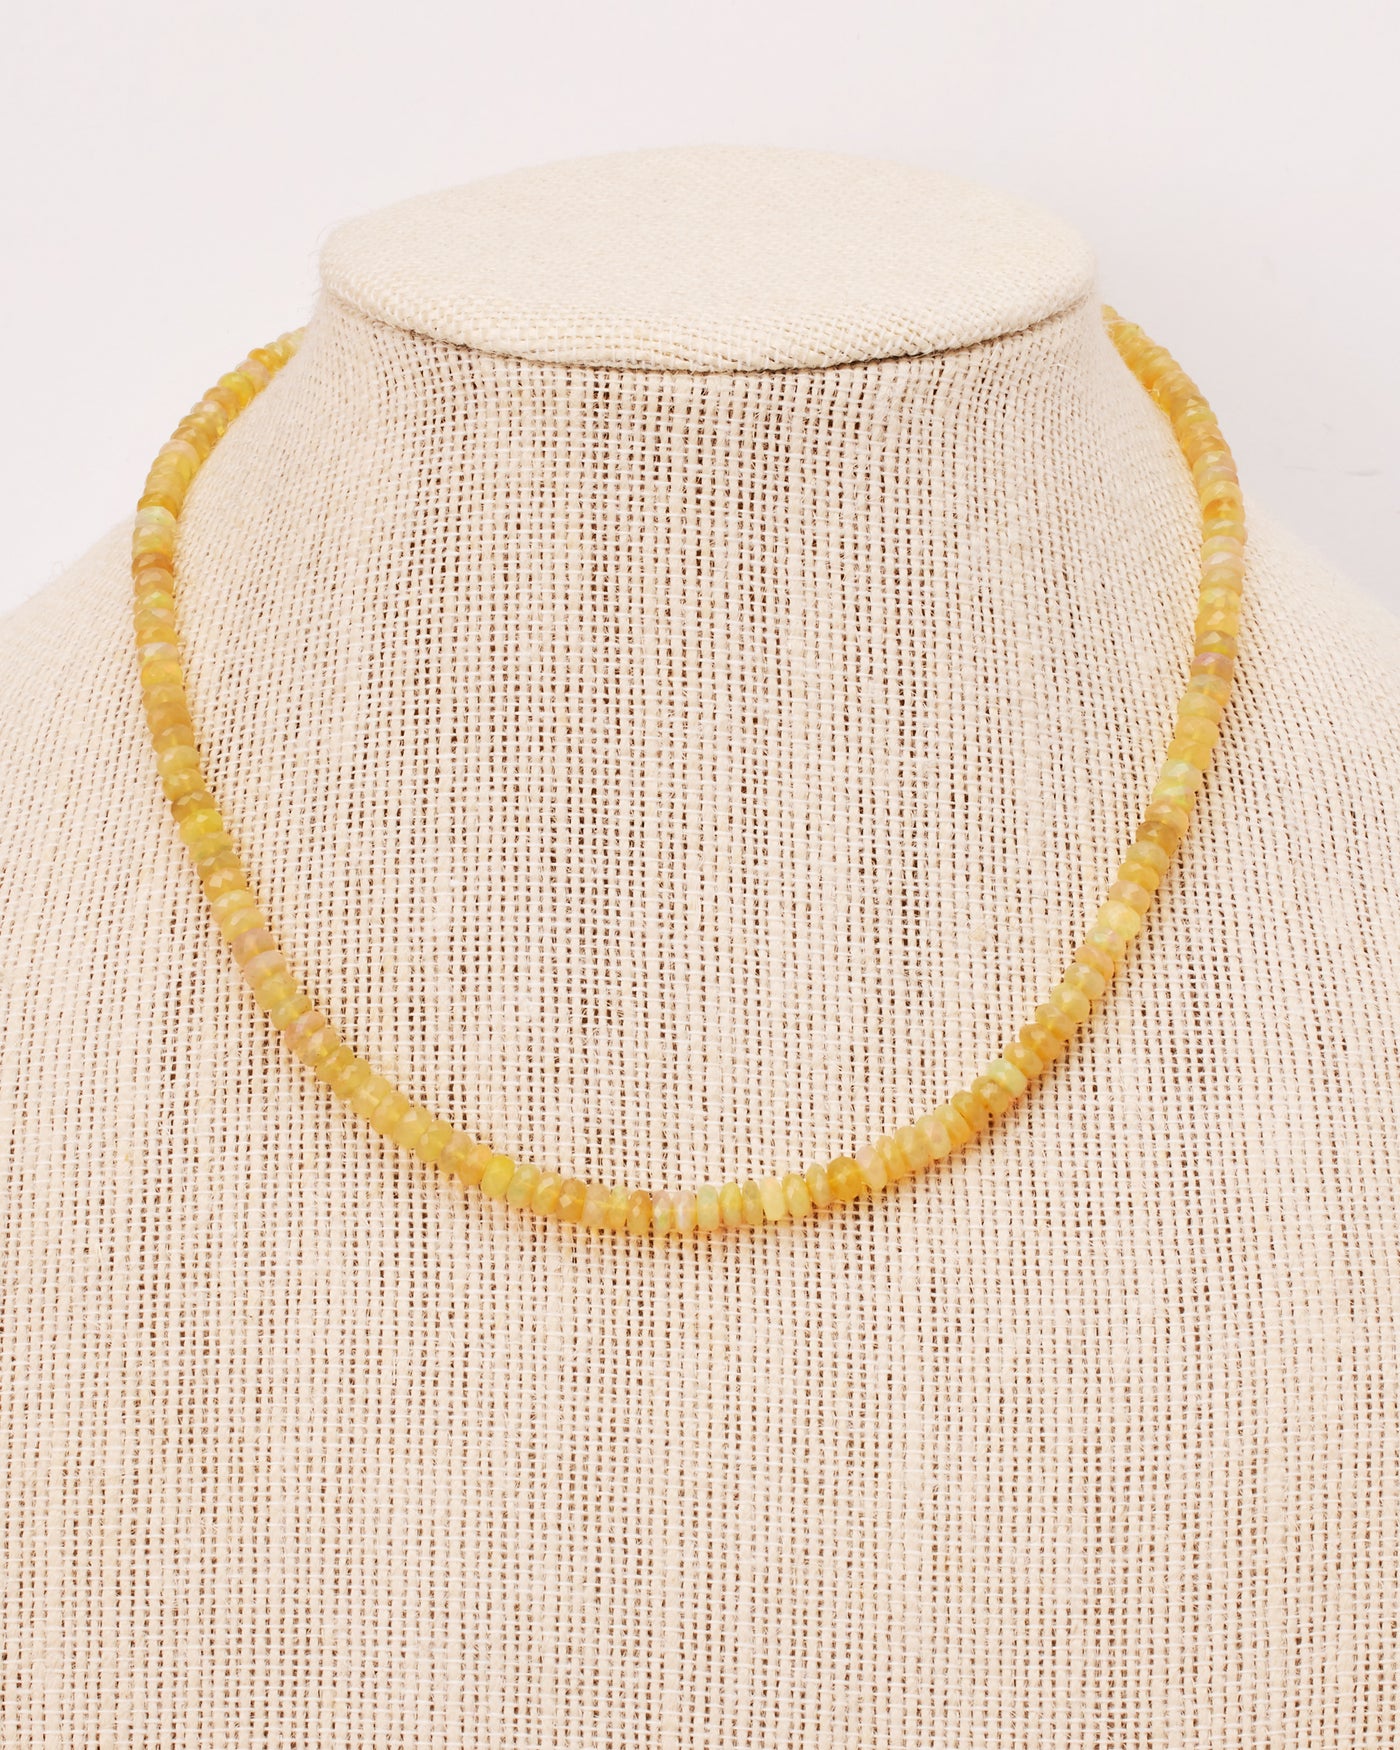 Opal on 14k Gold Necklace